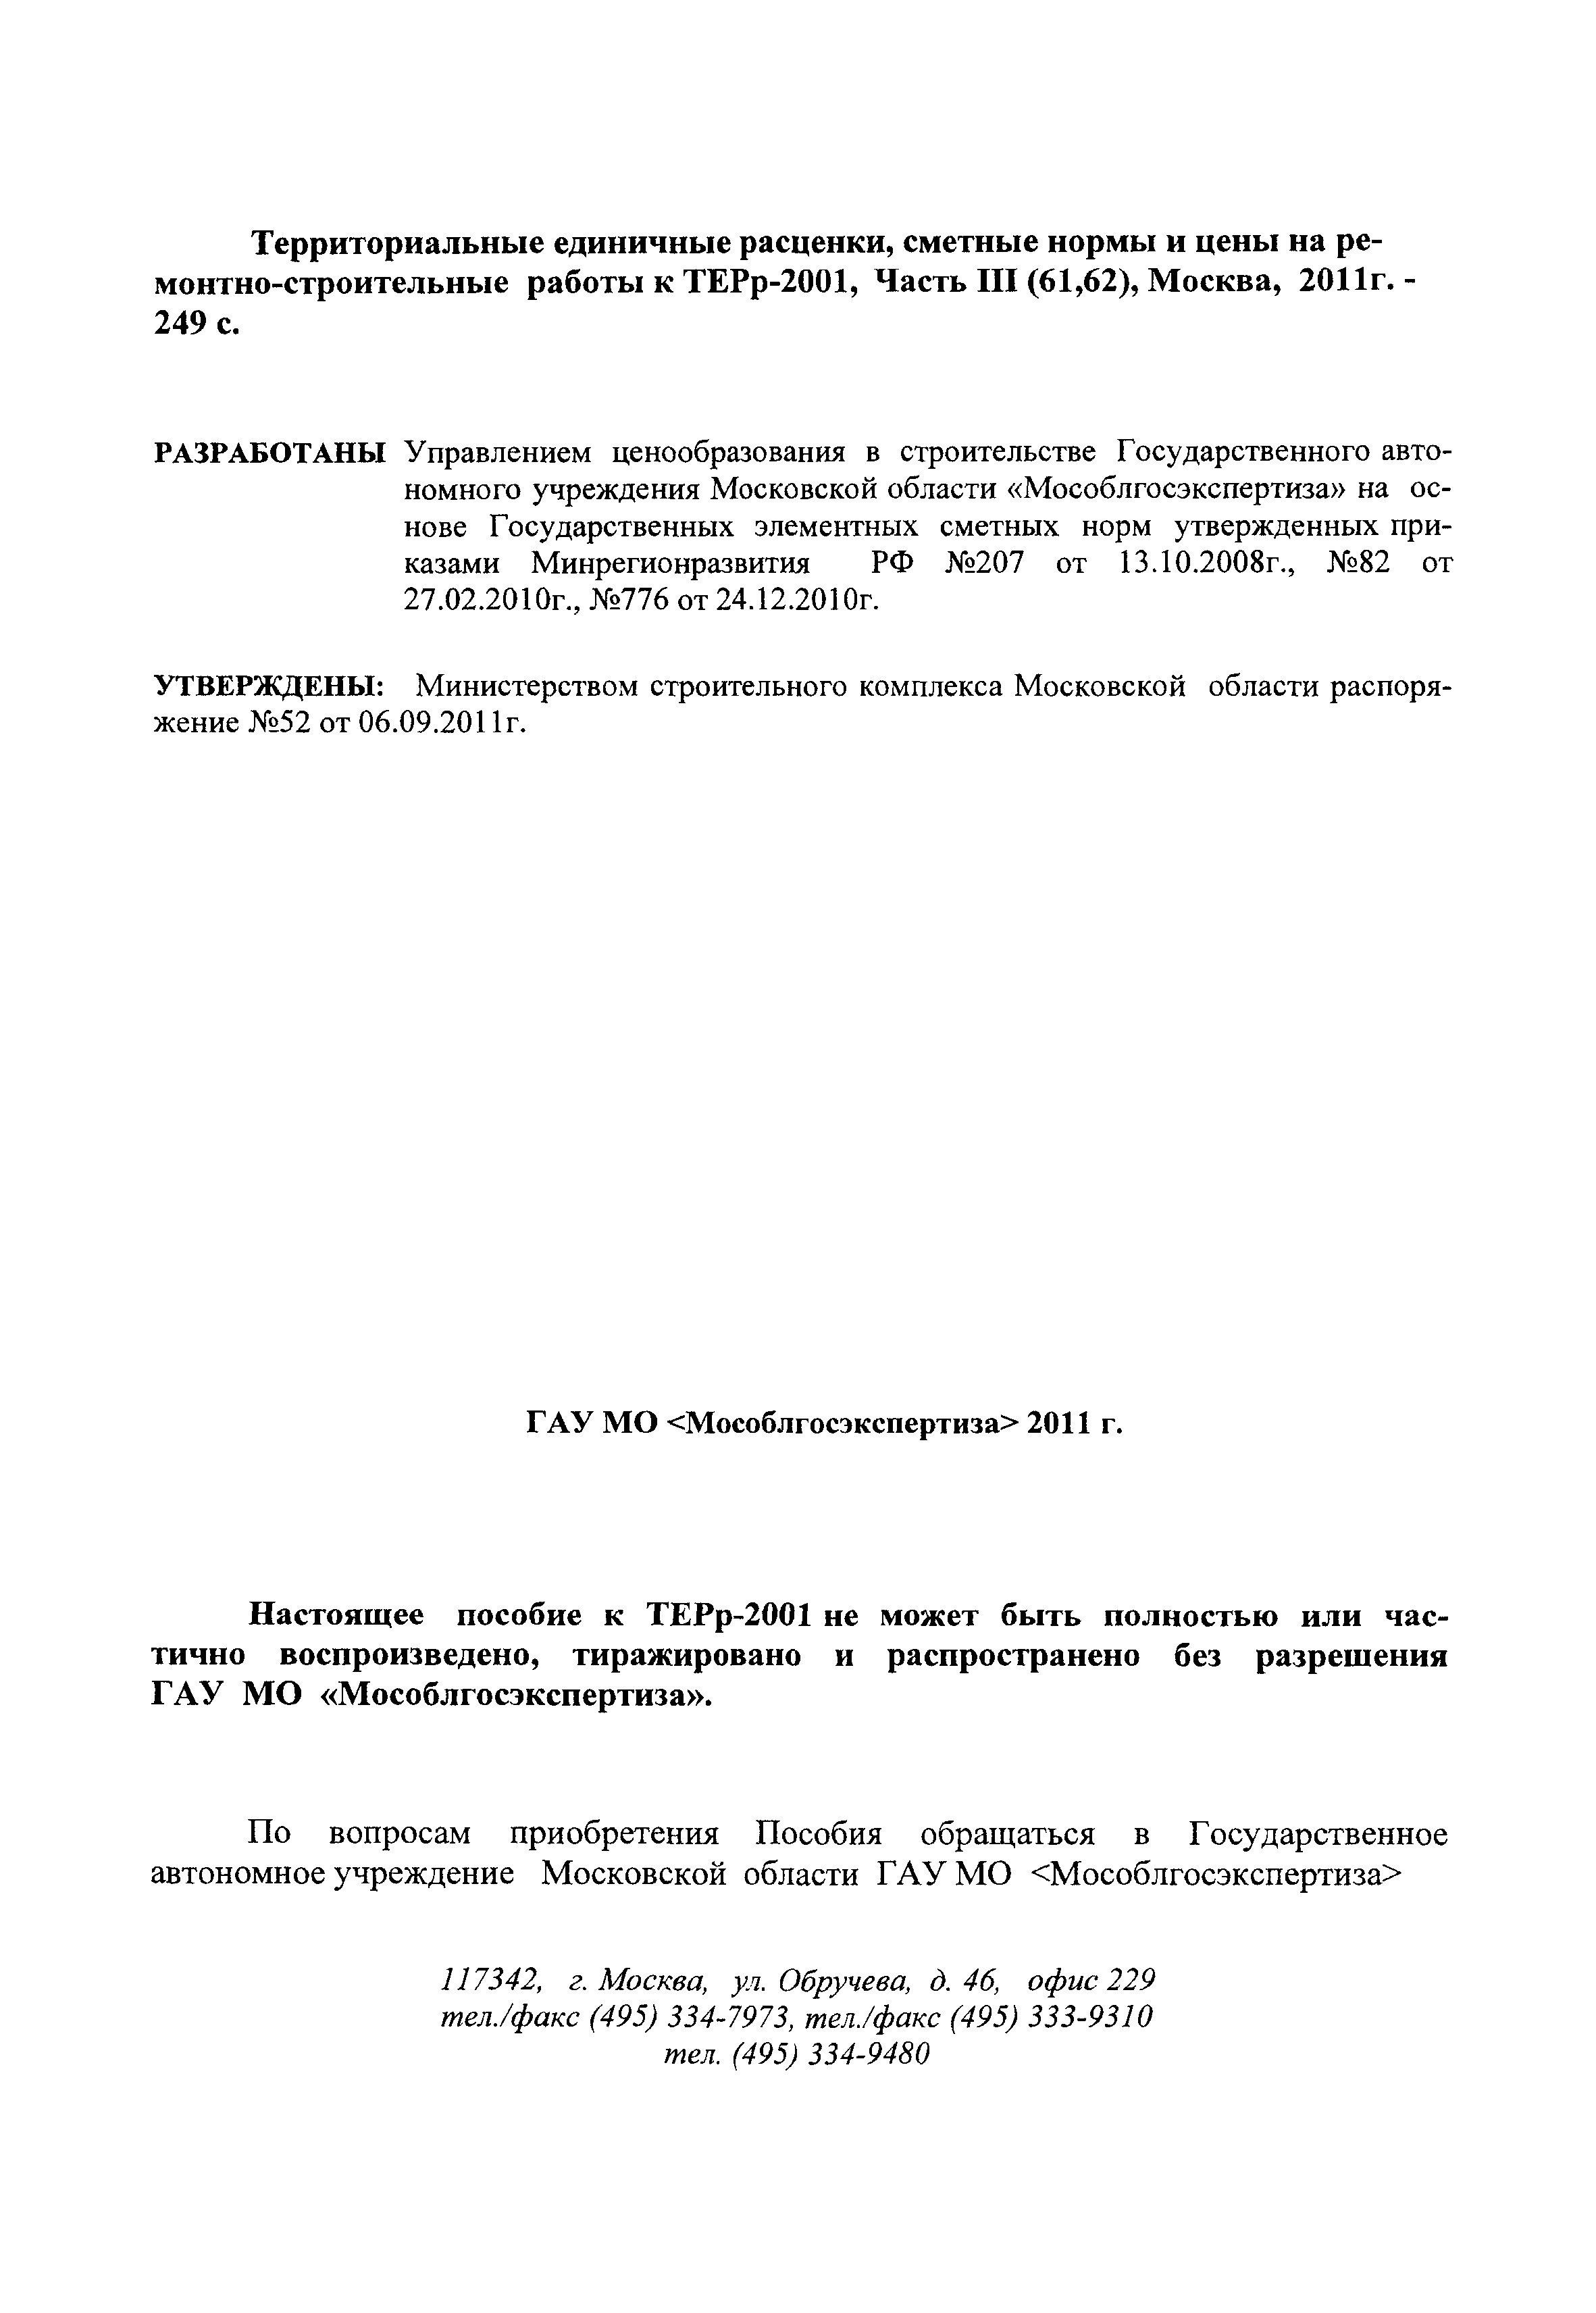 ГЭСНПиТЕРр 2001-61 Московской области